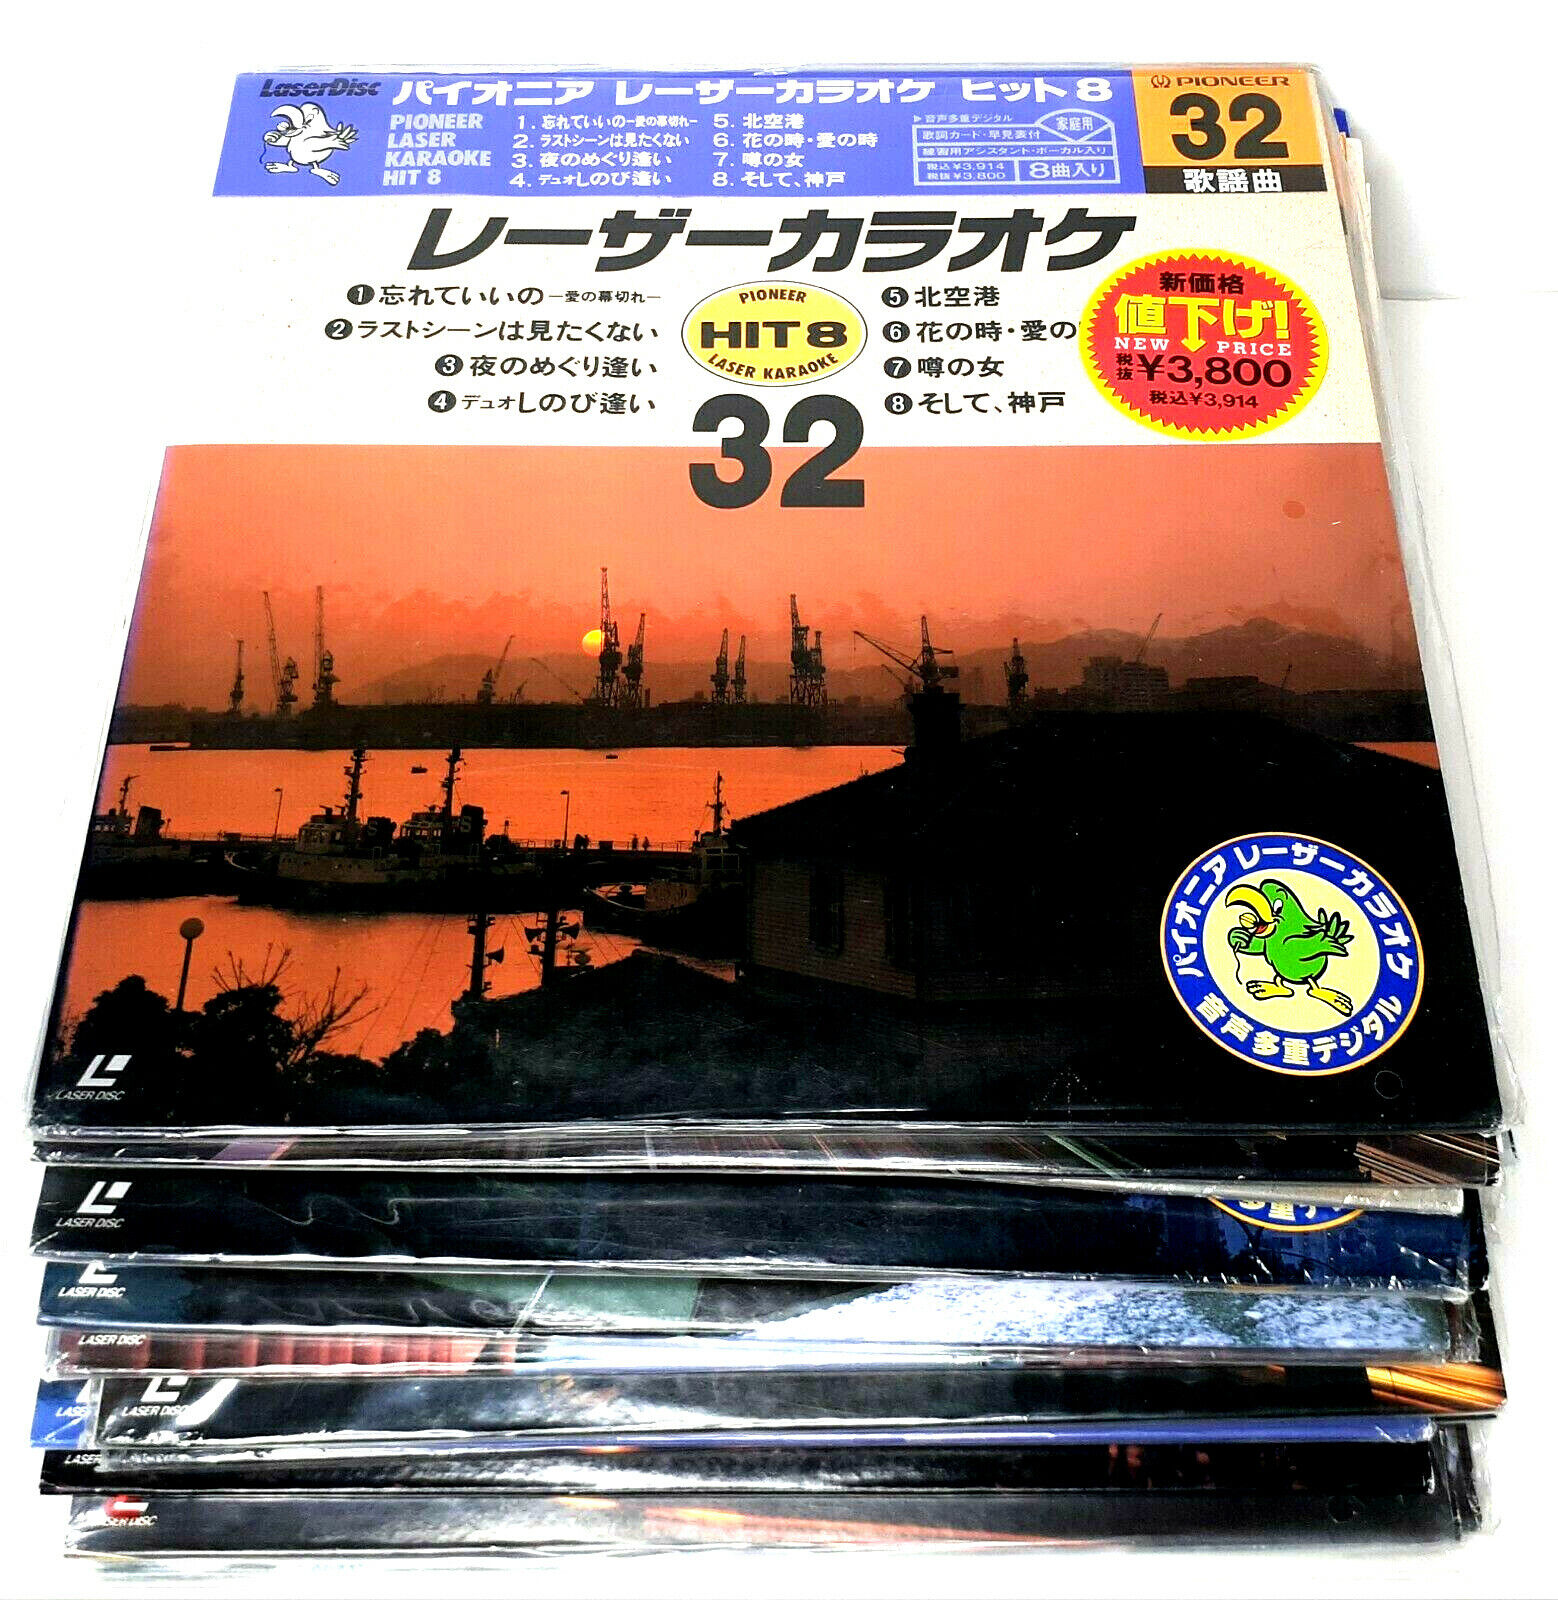 Vintage Karaoke Japanese Pioneer Laserdisc 90s 80s Hits Video Disc LOT OF 18 Pioneer Pioneer